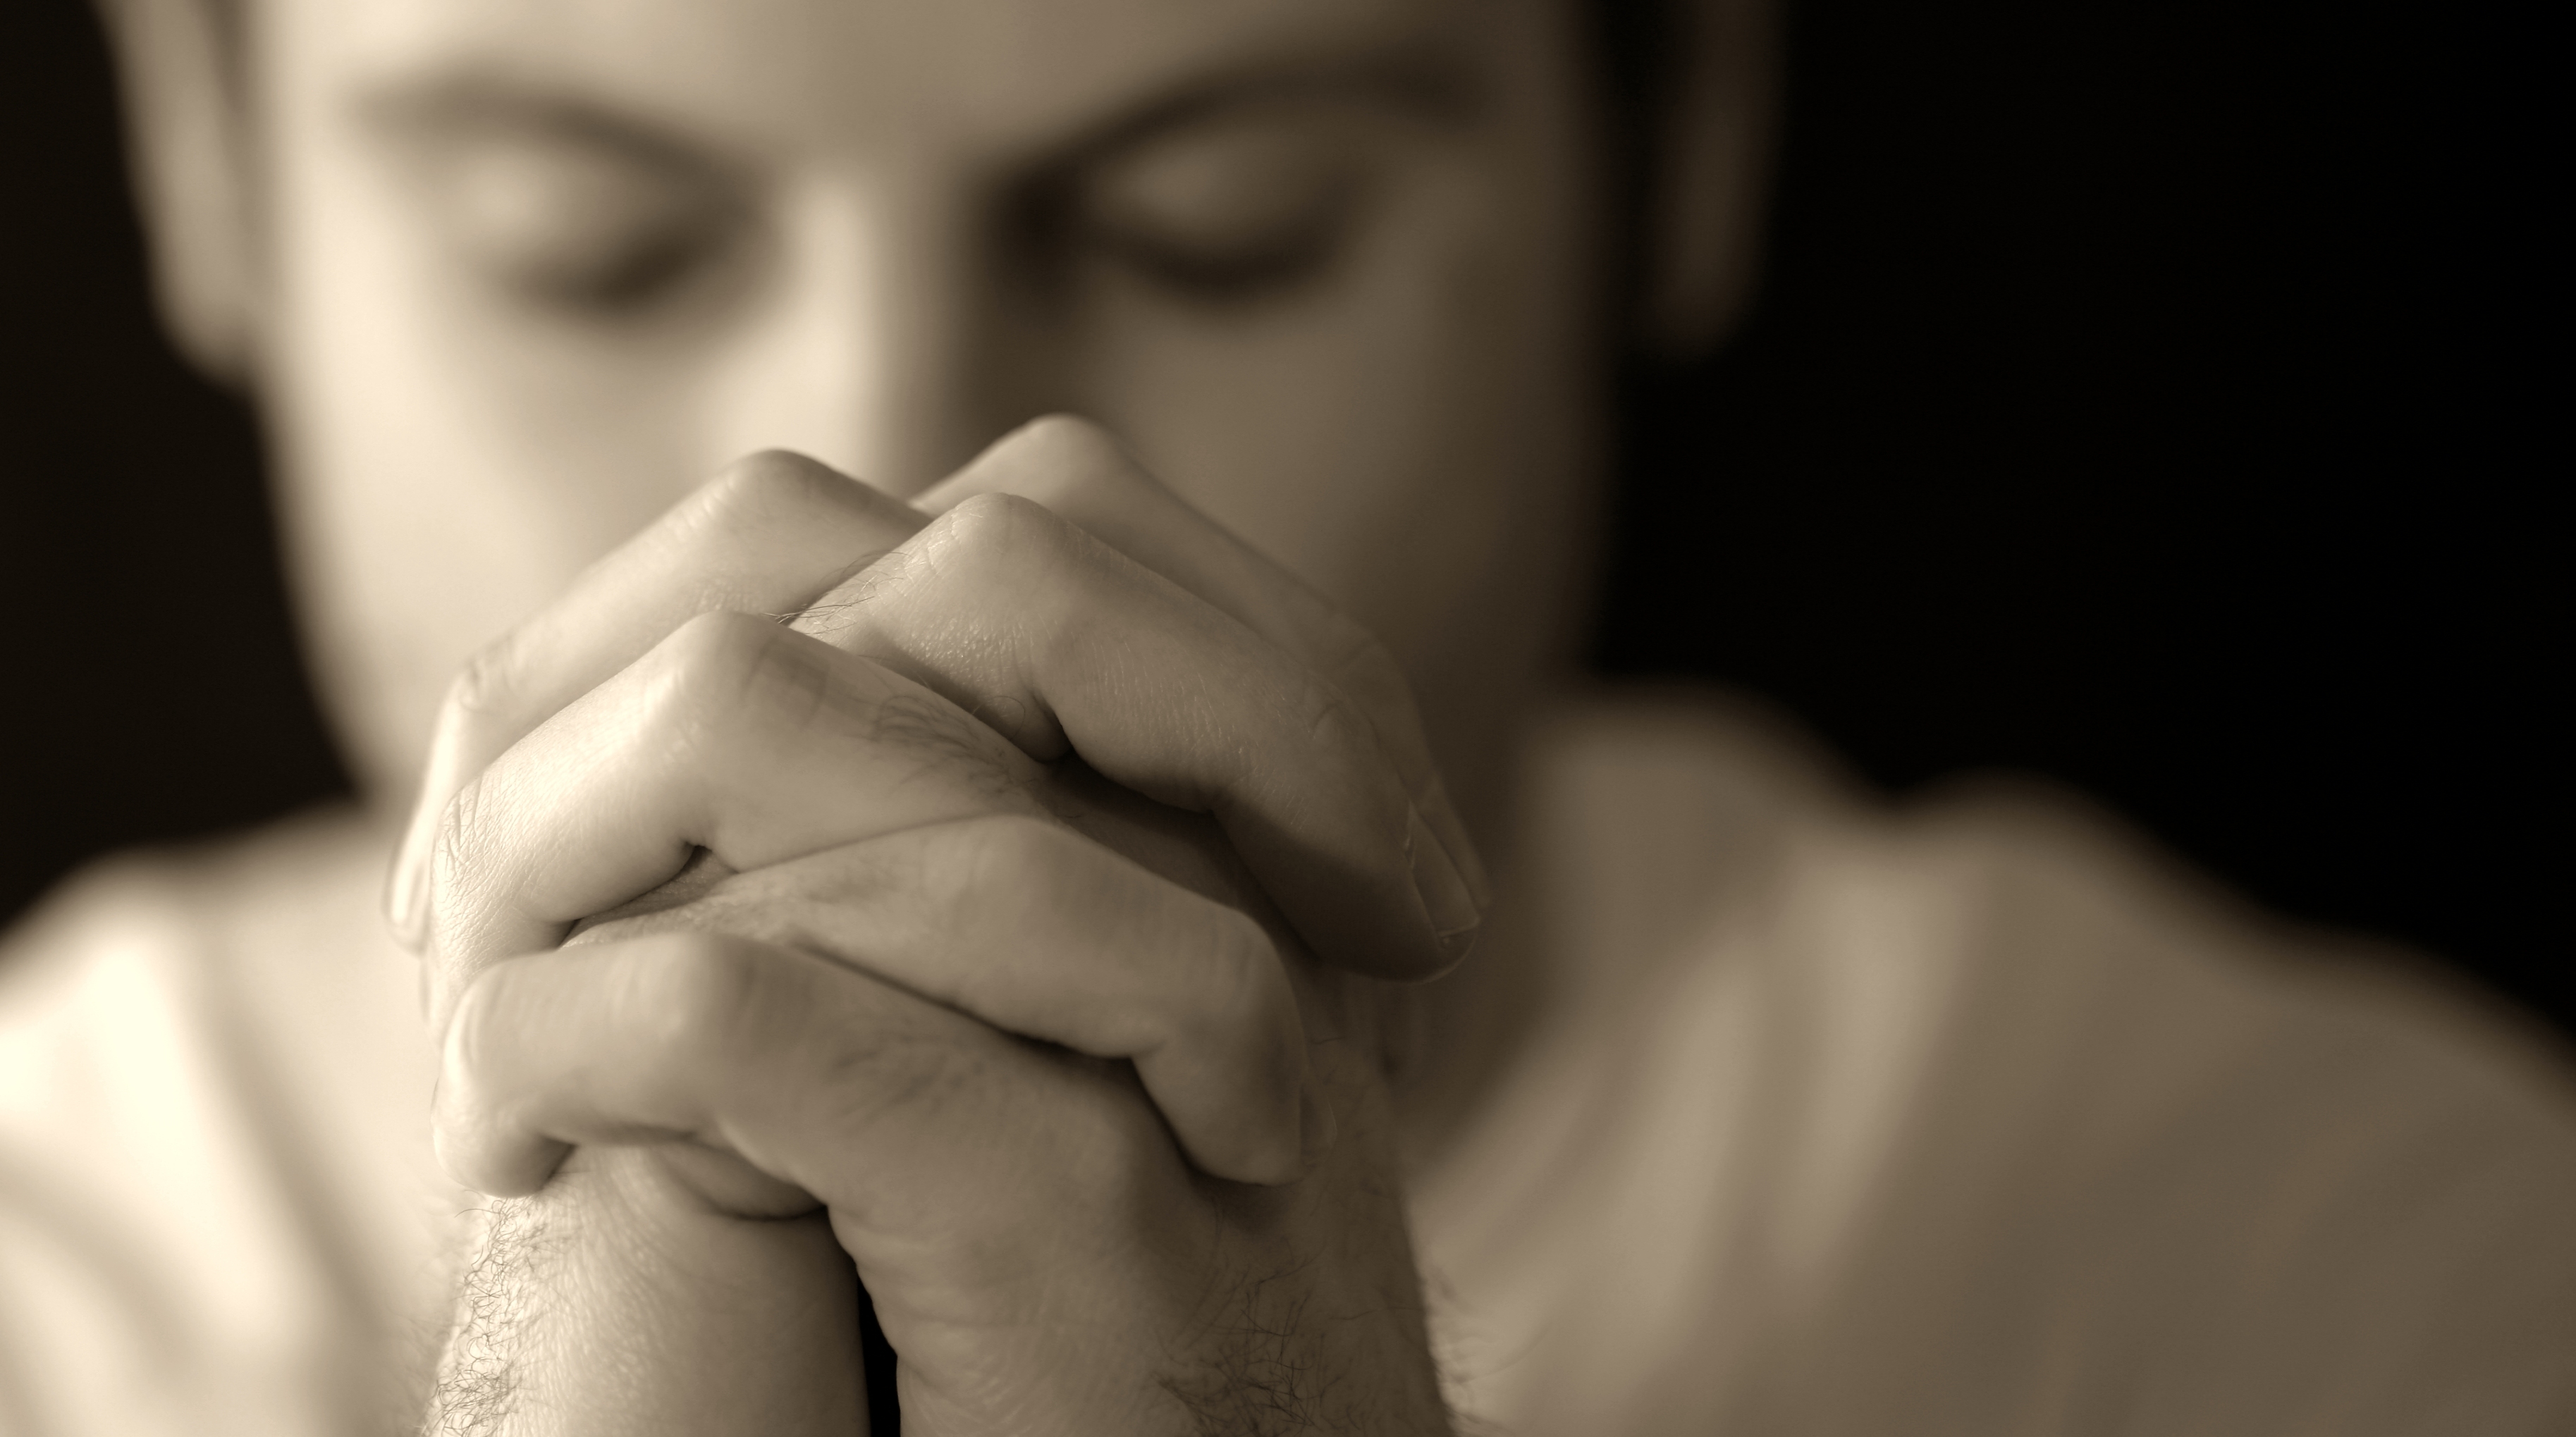 Условия прощения. Человек молится. Парень молится. Юноша молится. Мужчина молится Богу.